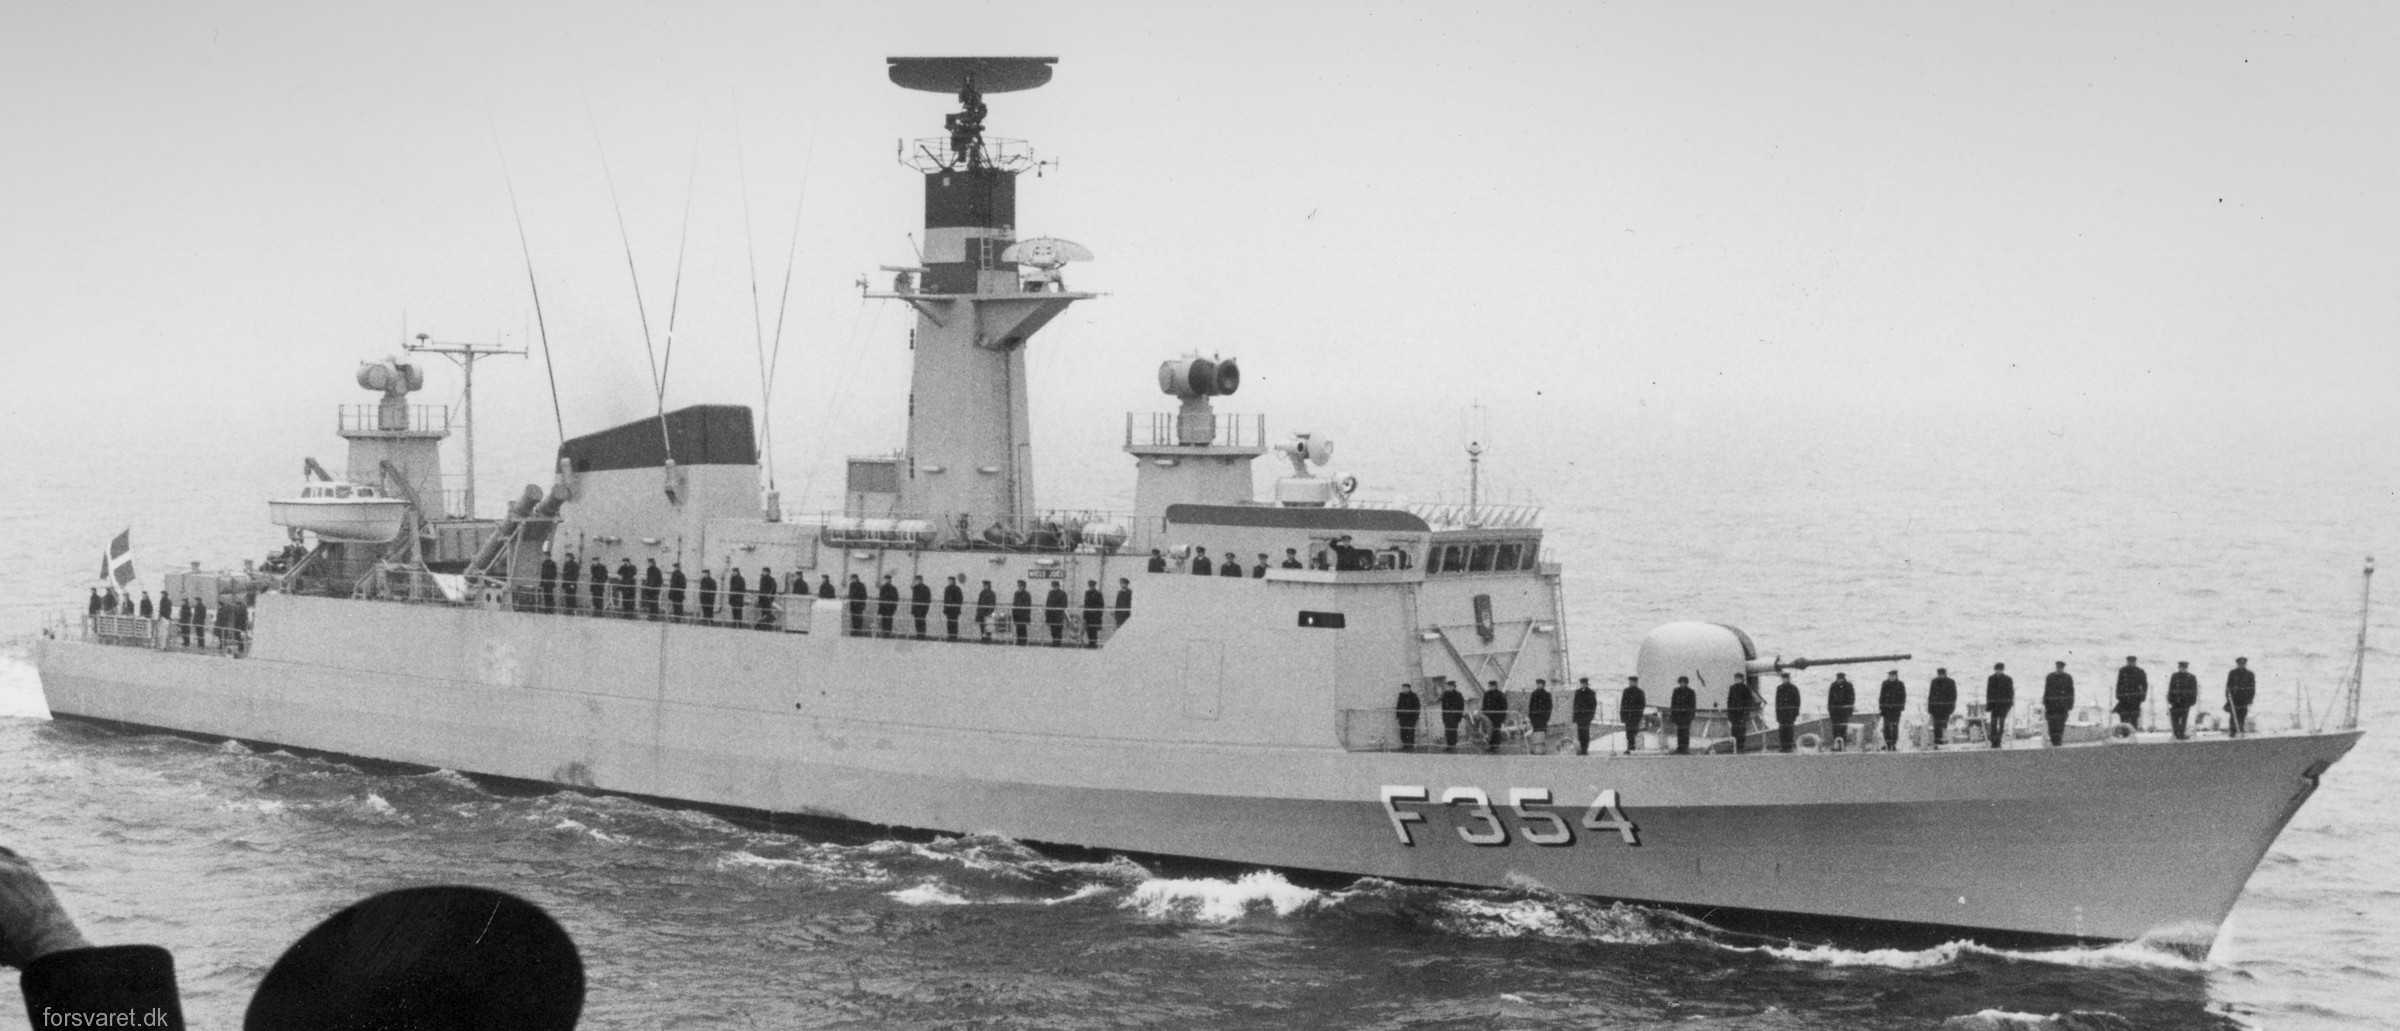 f-354 hdms niels juel class corvette royal danish navy kongelige danske marine kdm 29